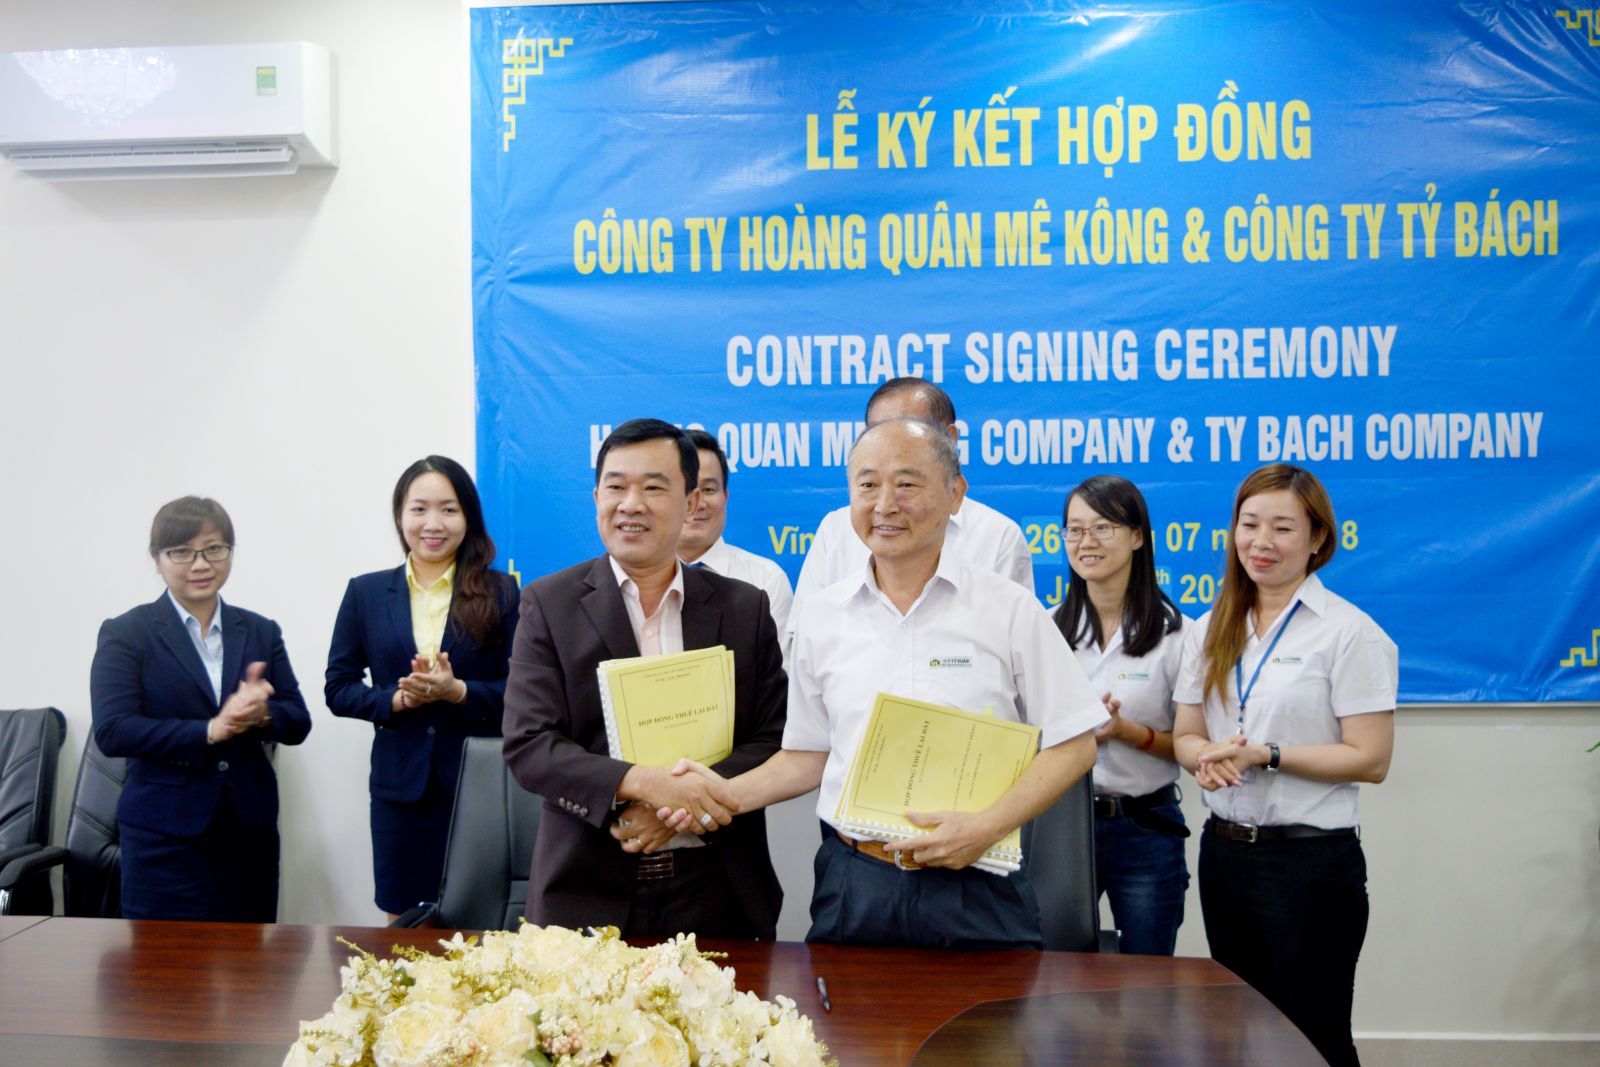 Ông Trương Đình Thảo – TGĐ Hoàng Quân Mê Kông vàp/ông Chen Tsao Kang – Giám đốc công ty Tỷ Bách tại lễ ký kết hợp đồng hợp tác